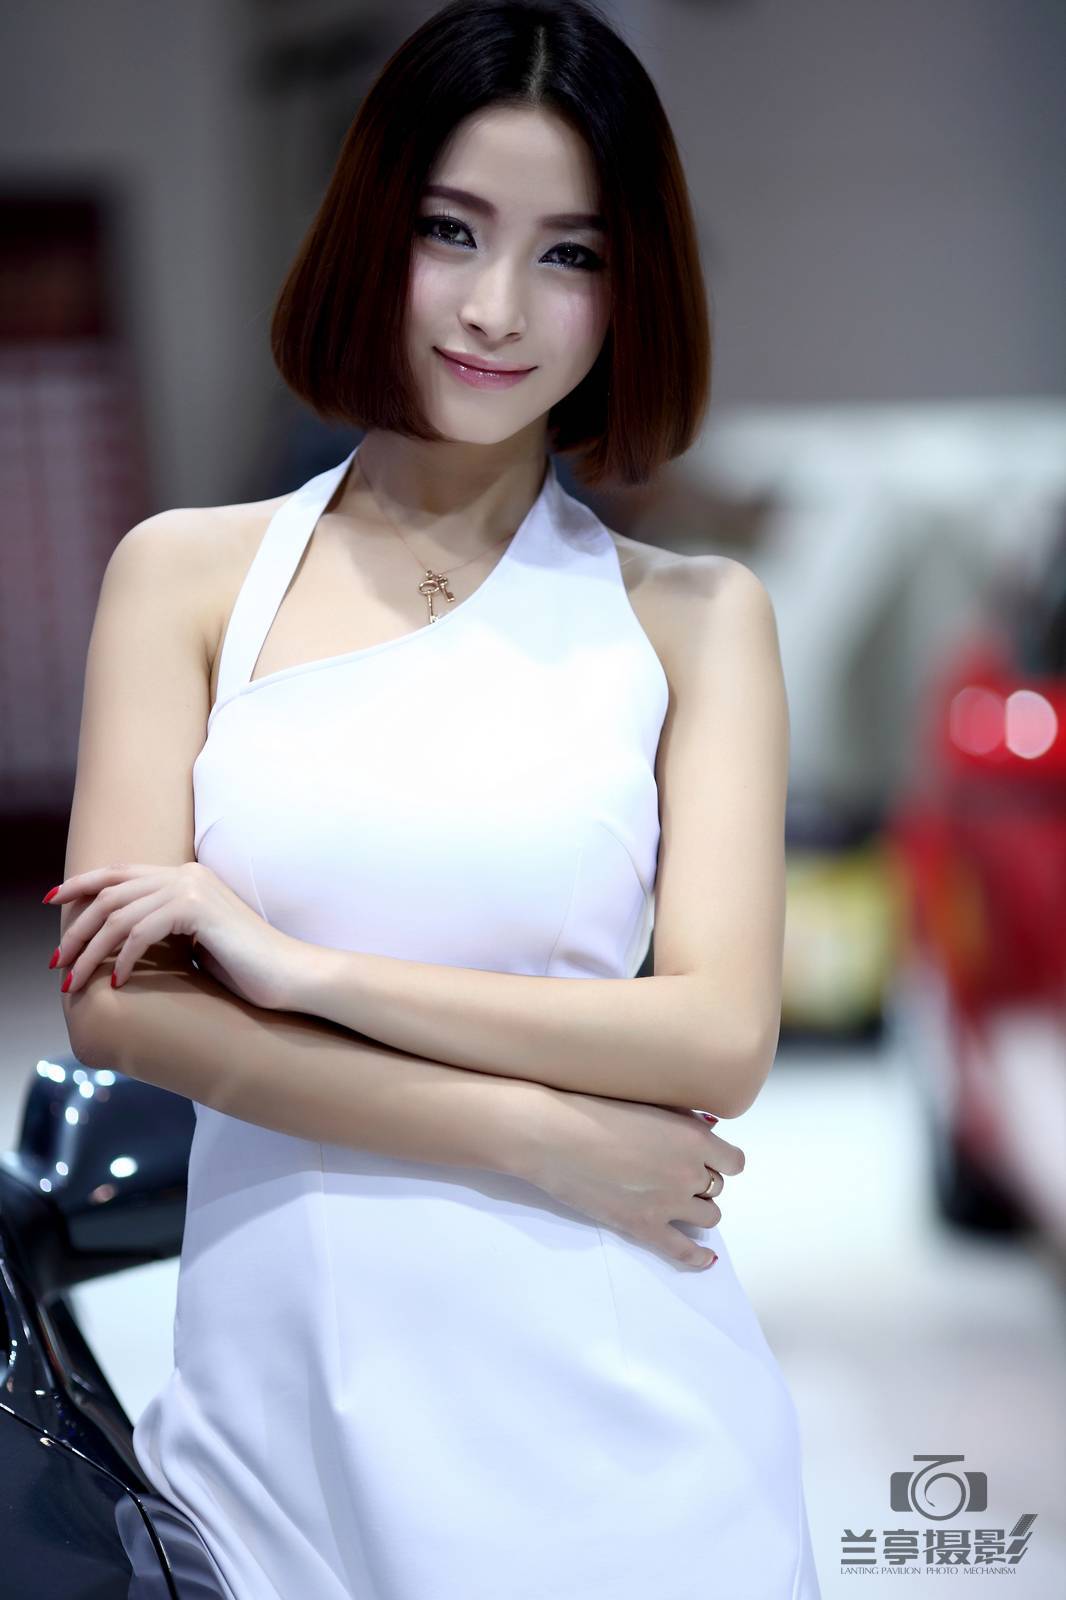 Beautiful car model of the 4th Zhengzhou International Auto Show